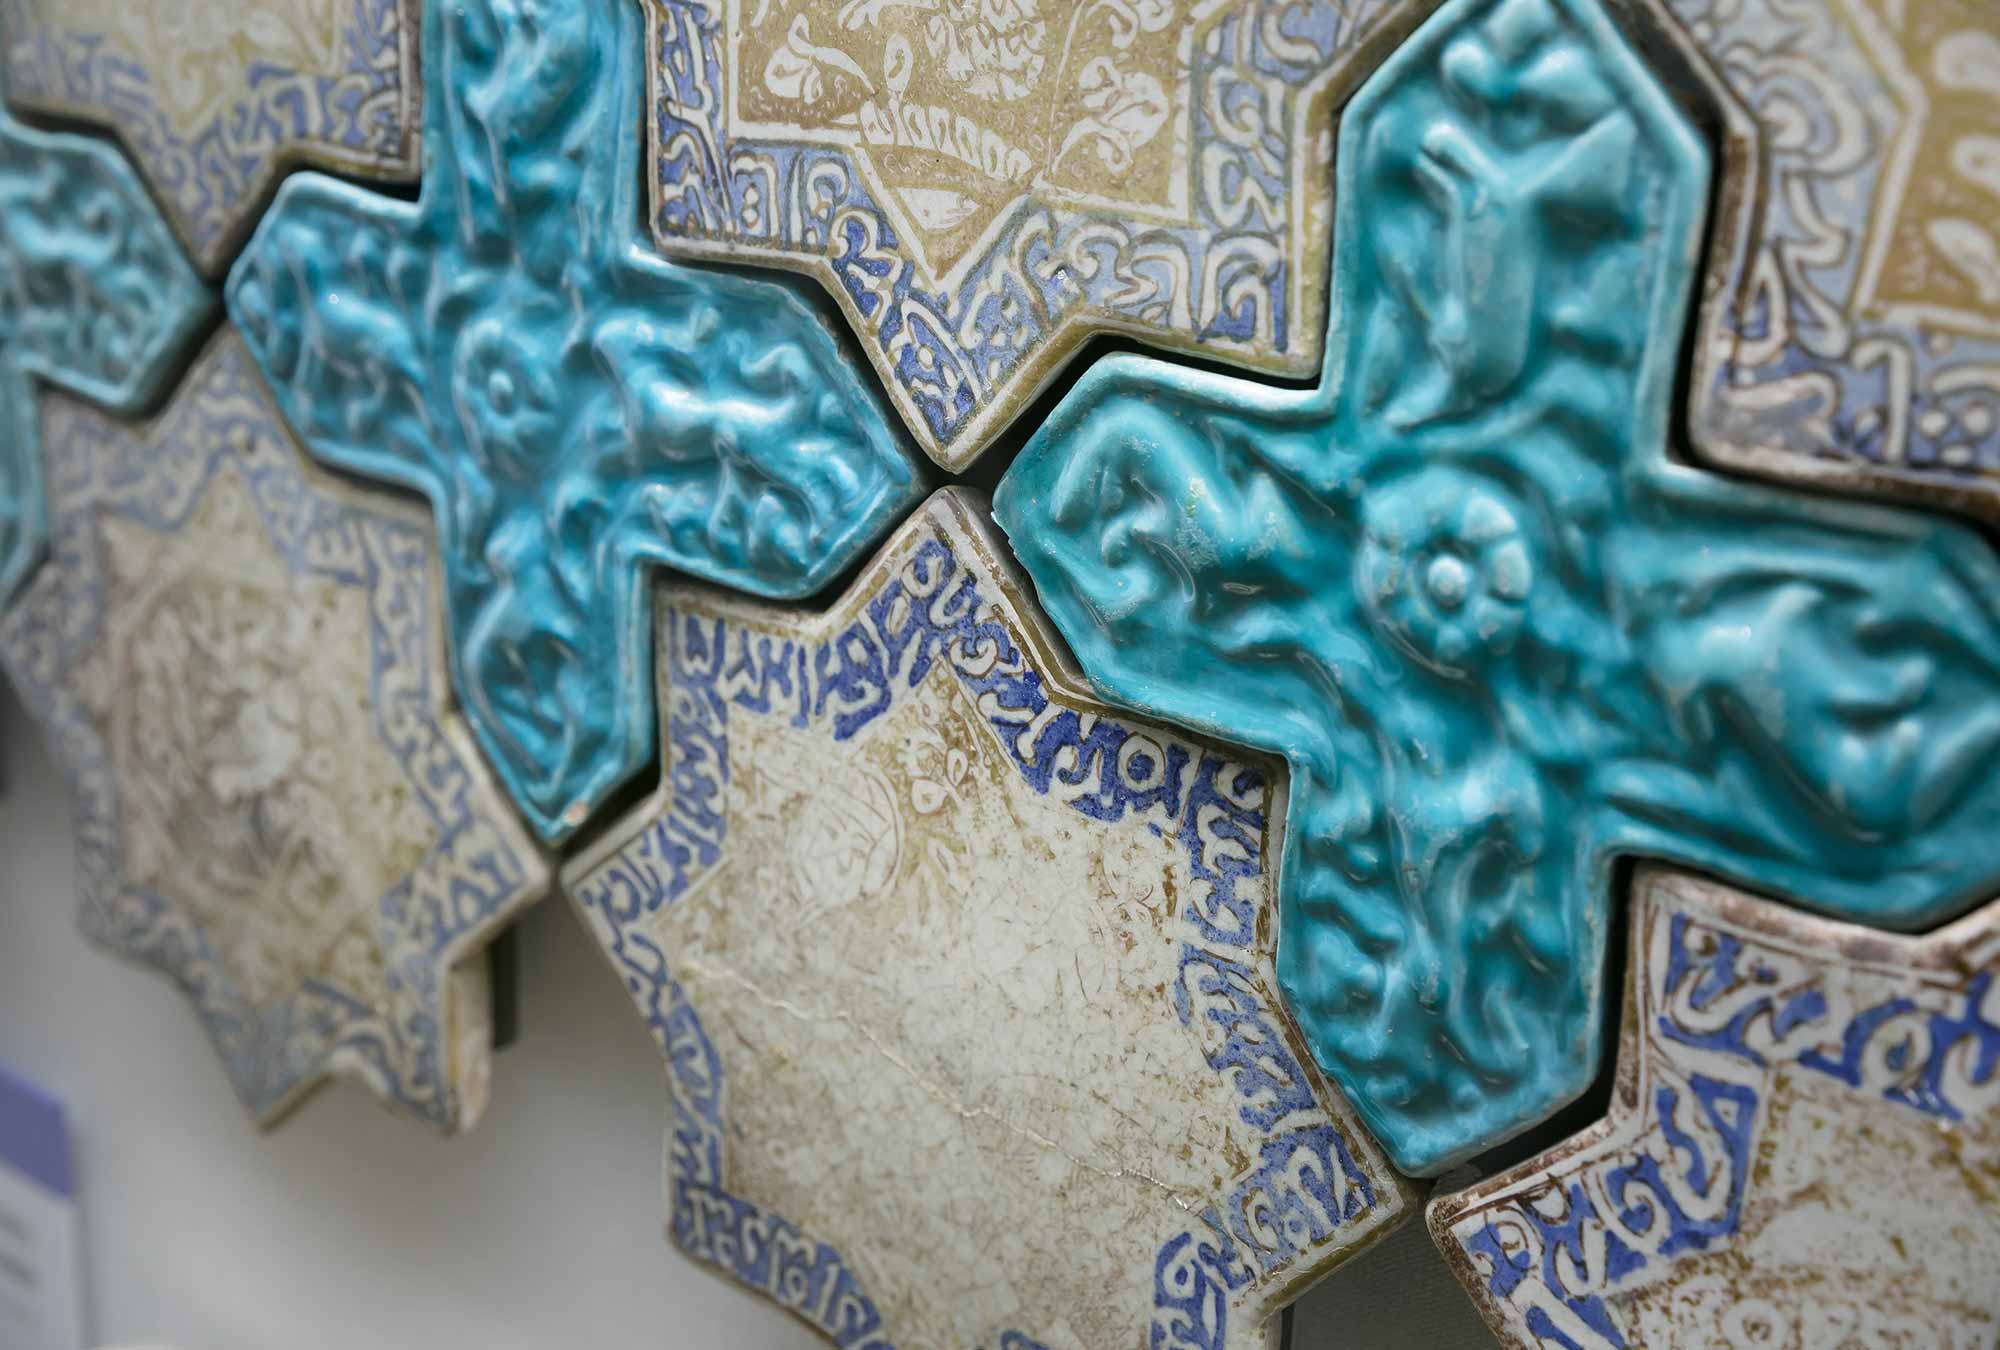 13〜14世紀のイランで作られたタイル。星型や十字型の形状、タイルの多彩な模様の組み合わせにより、複雑でありながら荘厳な世界観が作り出されていった